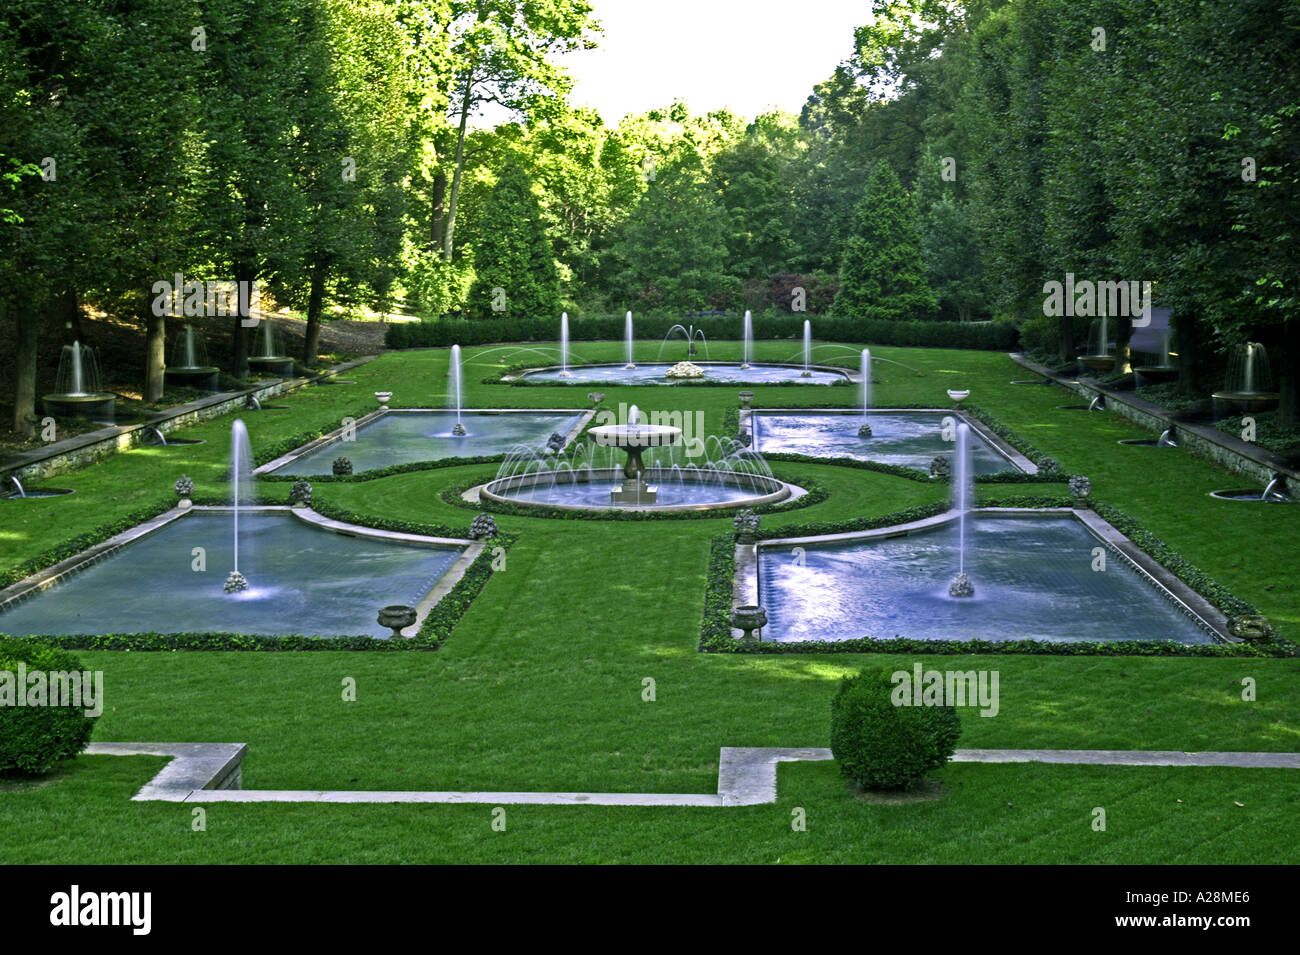 Jardins botaniques de fontaines d'eau Banque D'Images